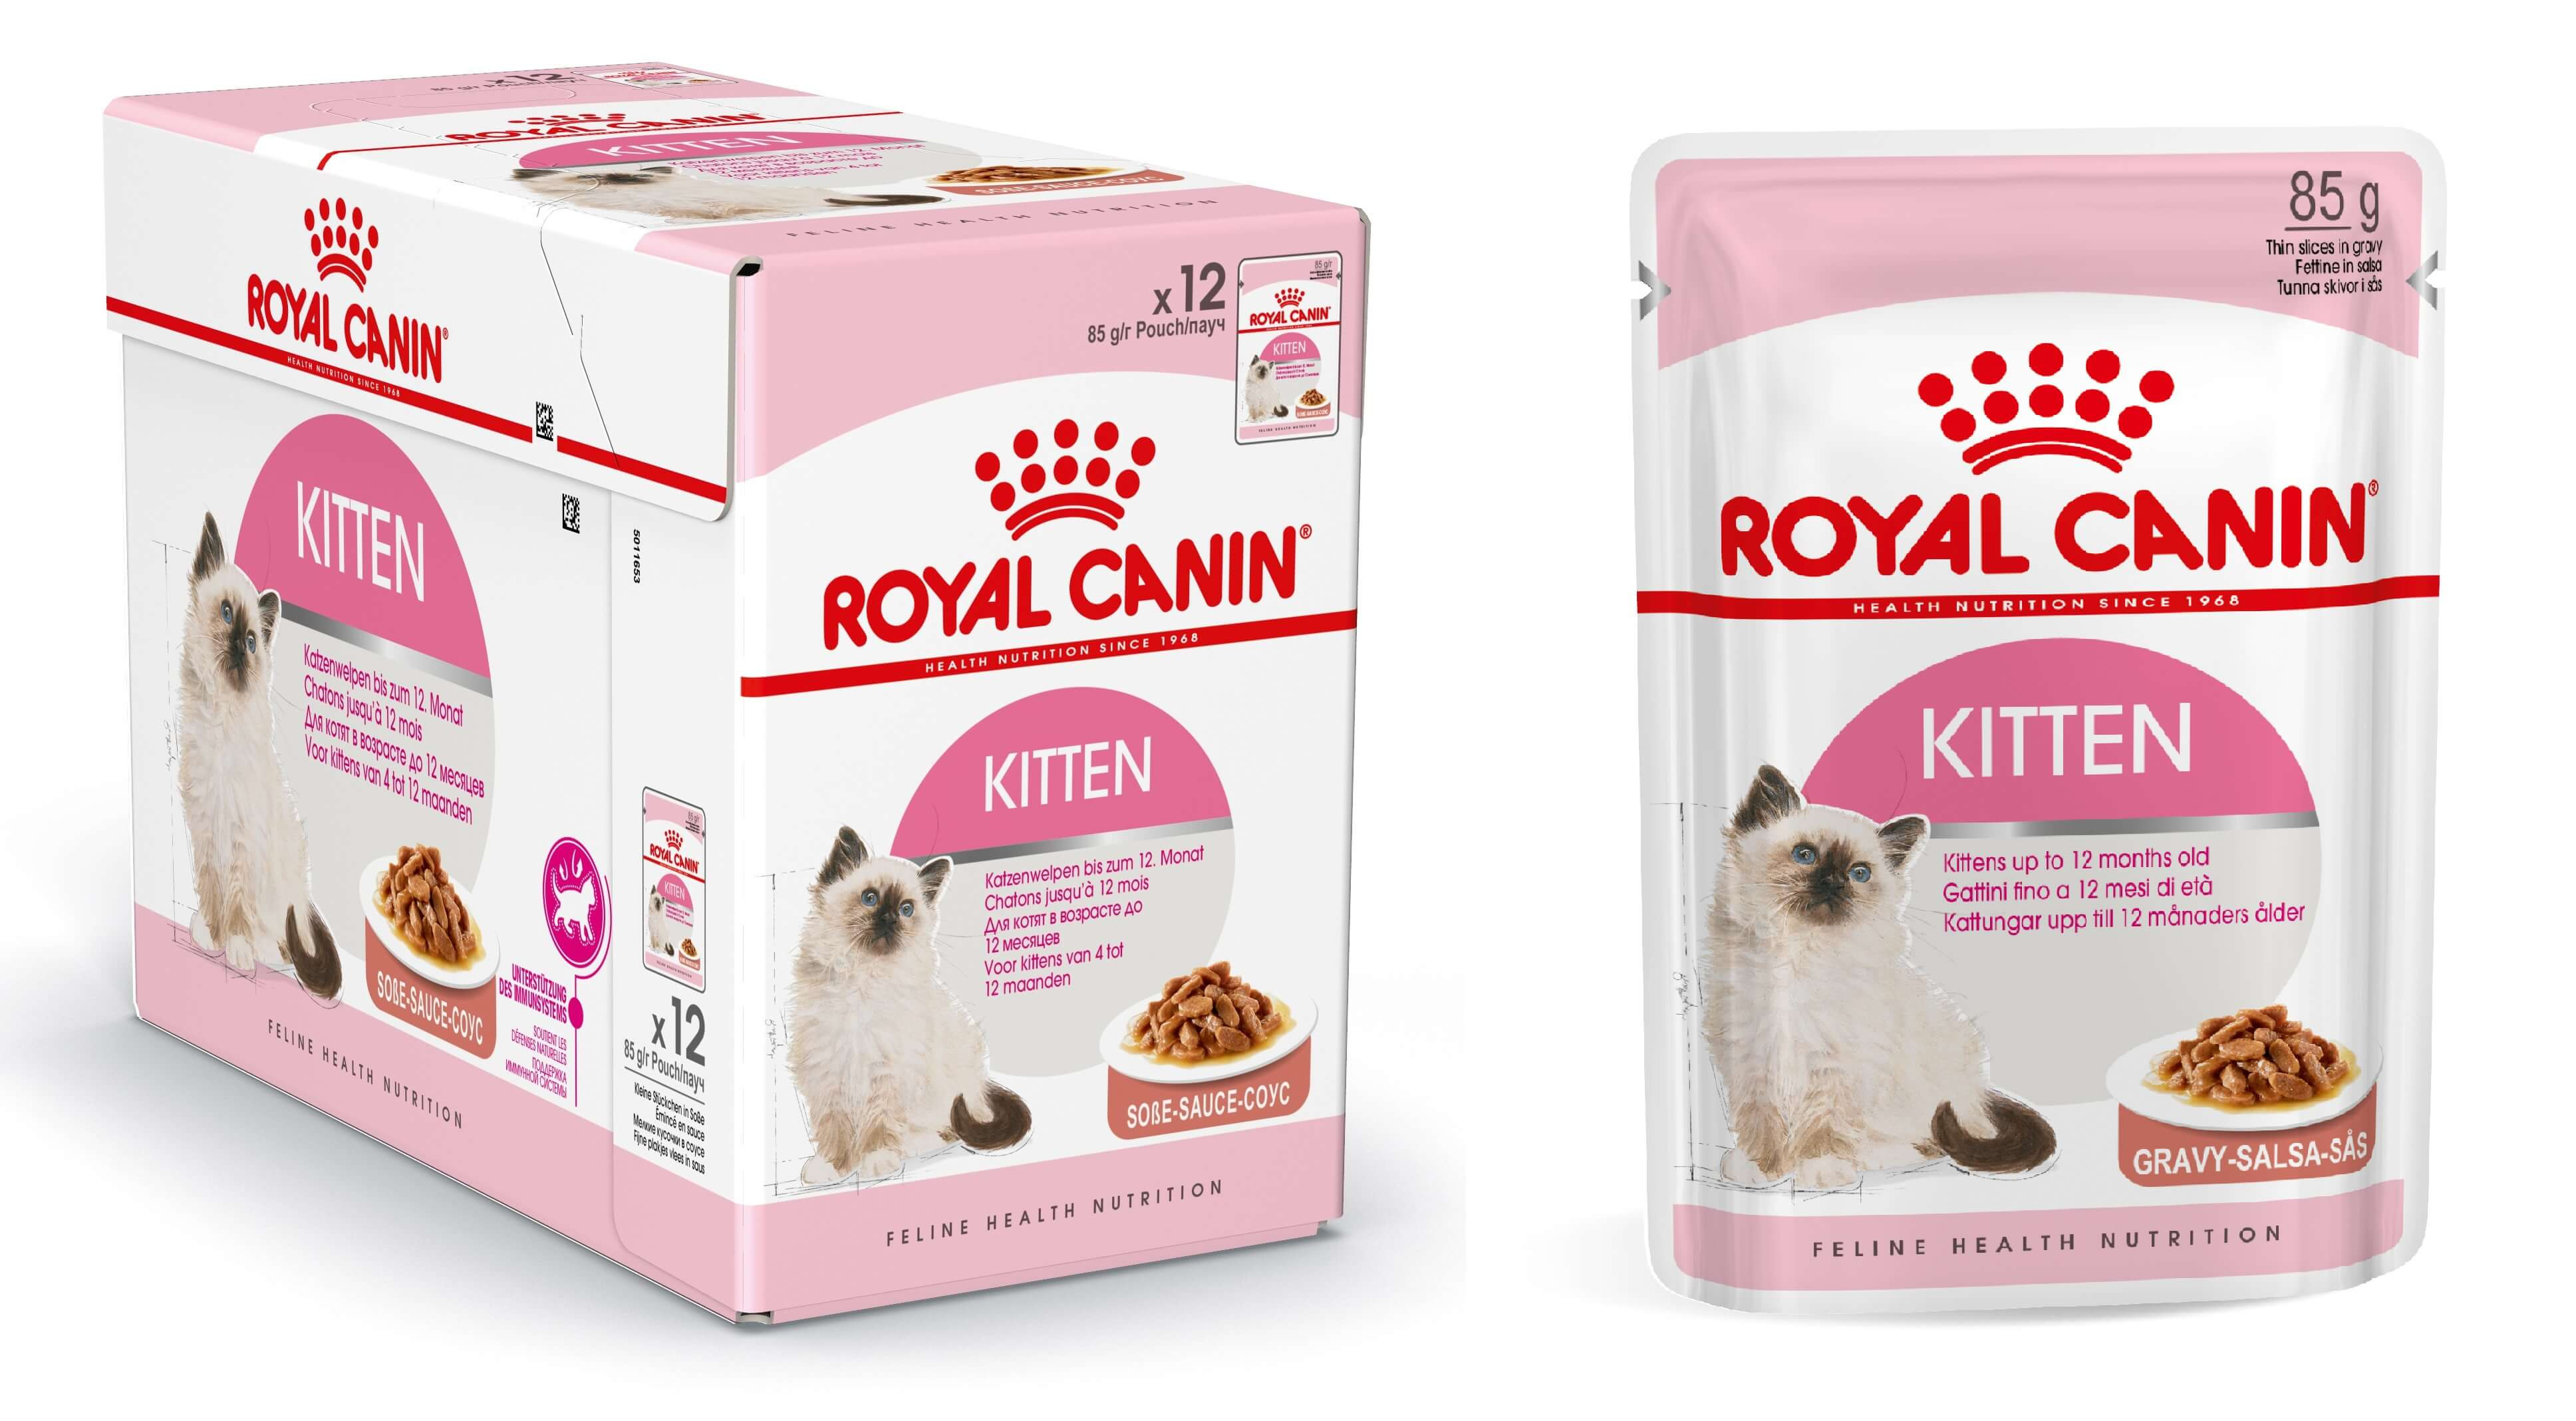 Royal Canin Kitten in salsa cibo umido per gattini (85 g)